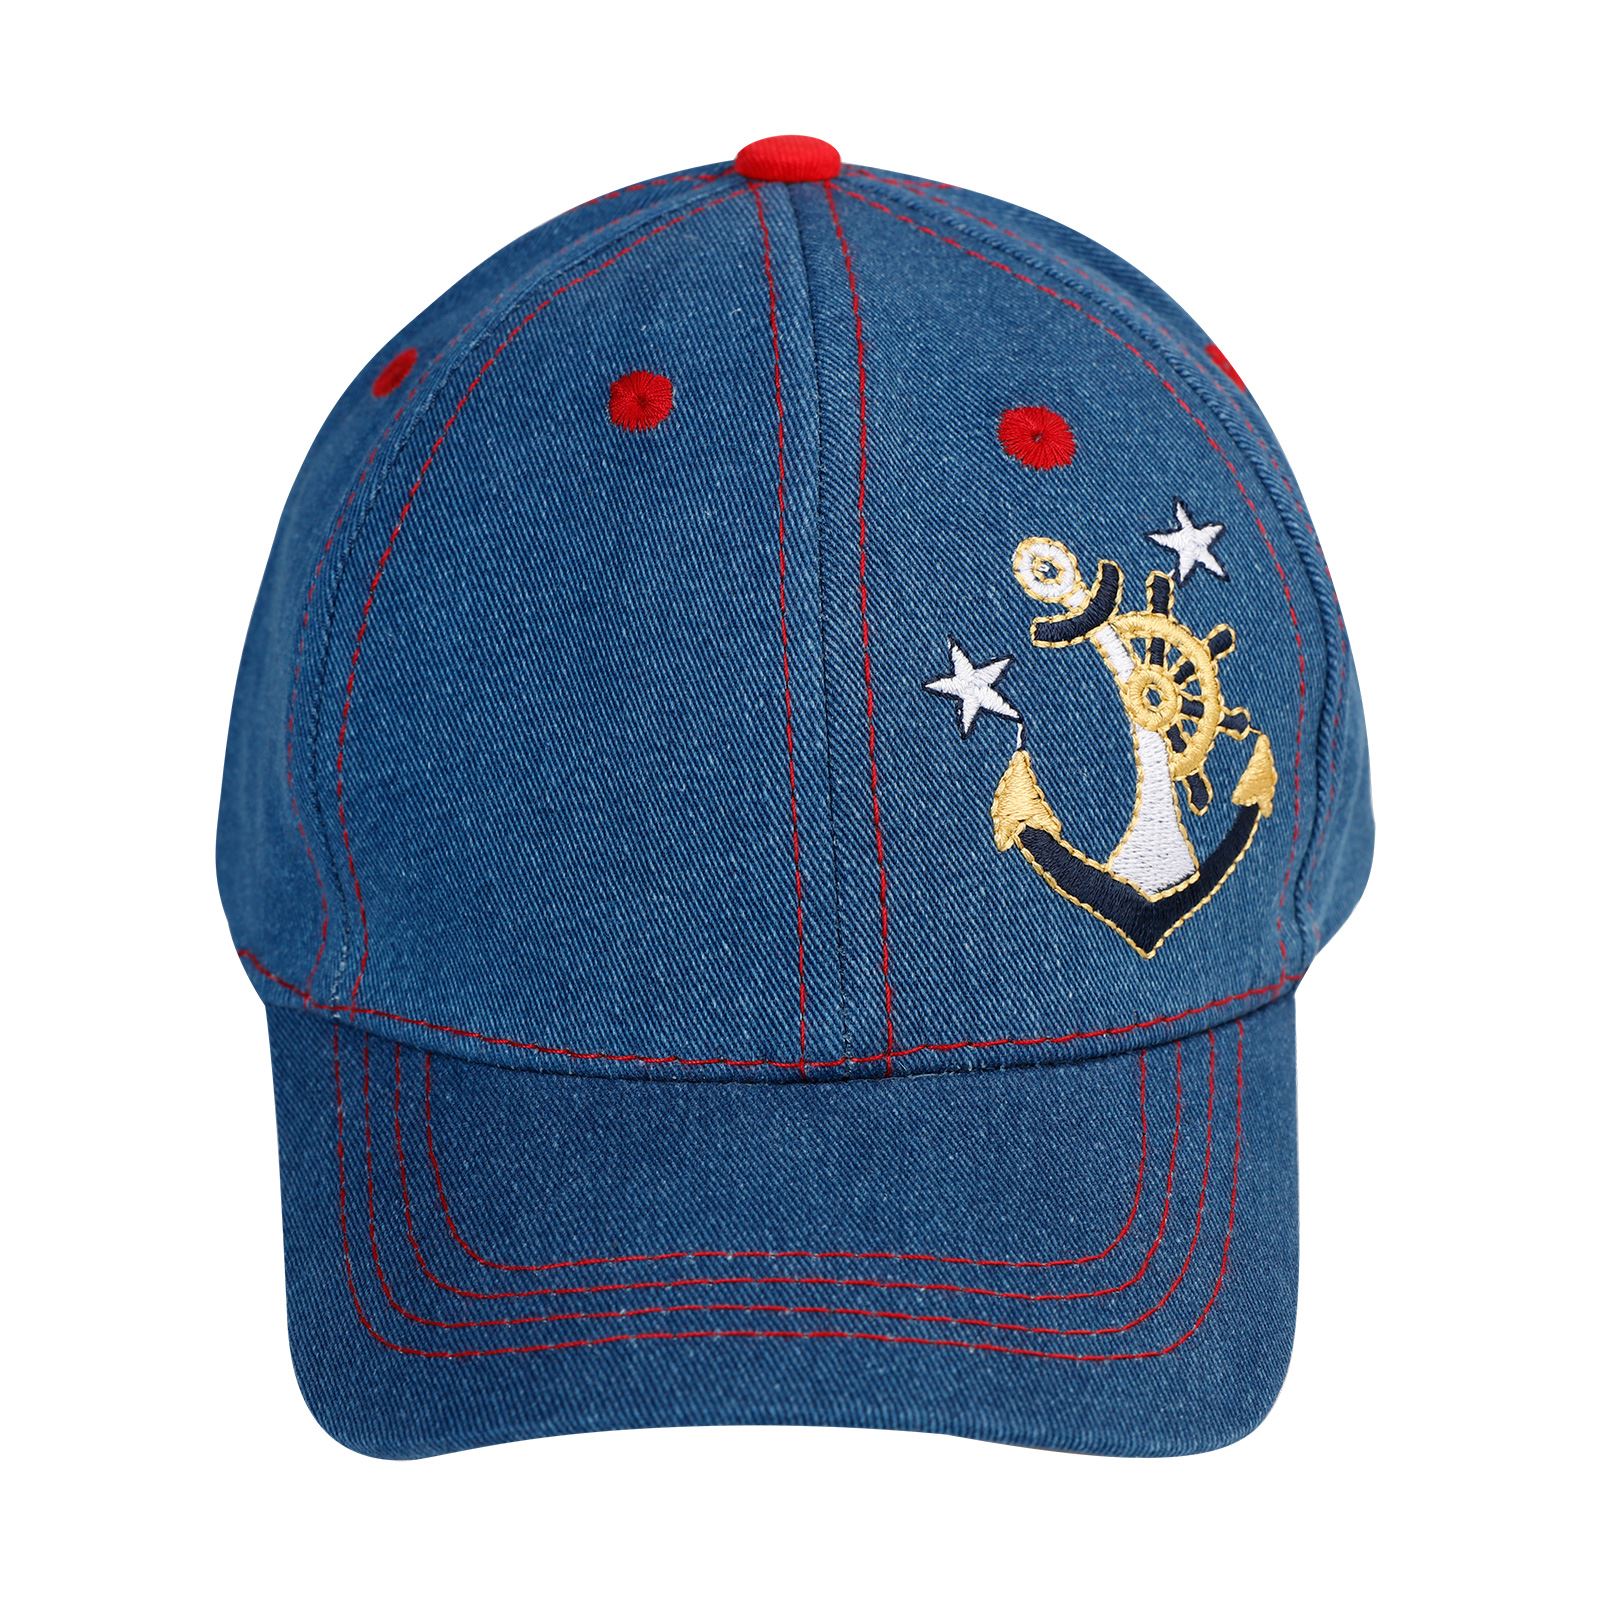 Tidi Erkek Çocuk Kep Şapka 2-5 Yaş Kırmızı